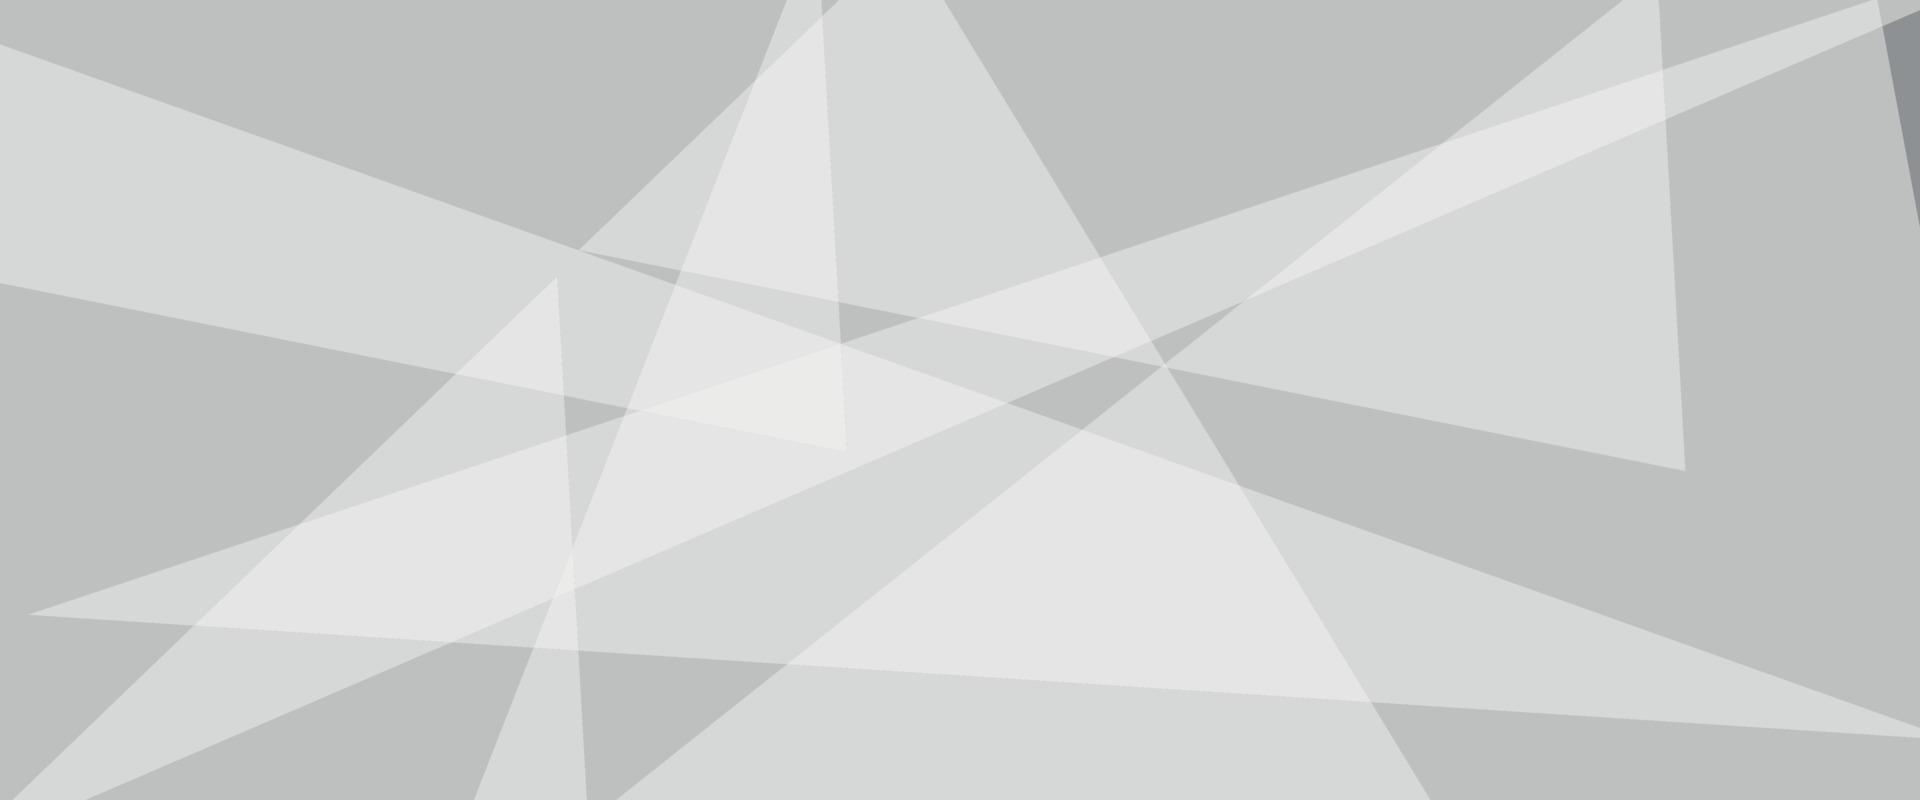 abstract meetkundig achtergrond met driehoeken. wit en grijs achtergrond. ruimte ontwerp concept. getextureerde wit materiaal in driehoek vormen in willekeurig decoratief web lay-out of poster, spandoek. vector